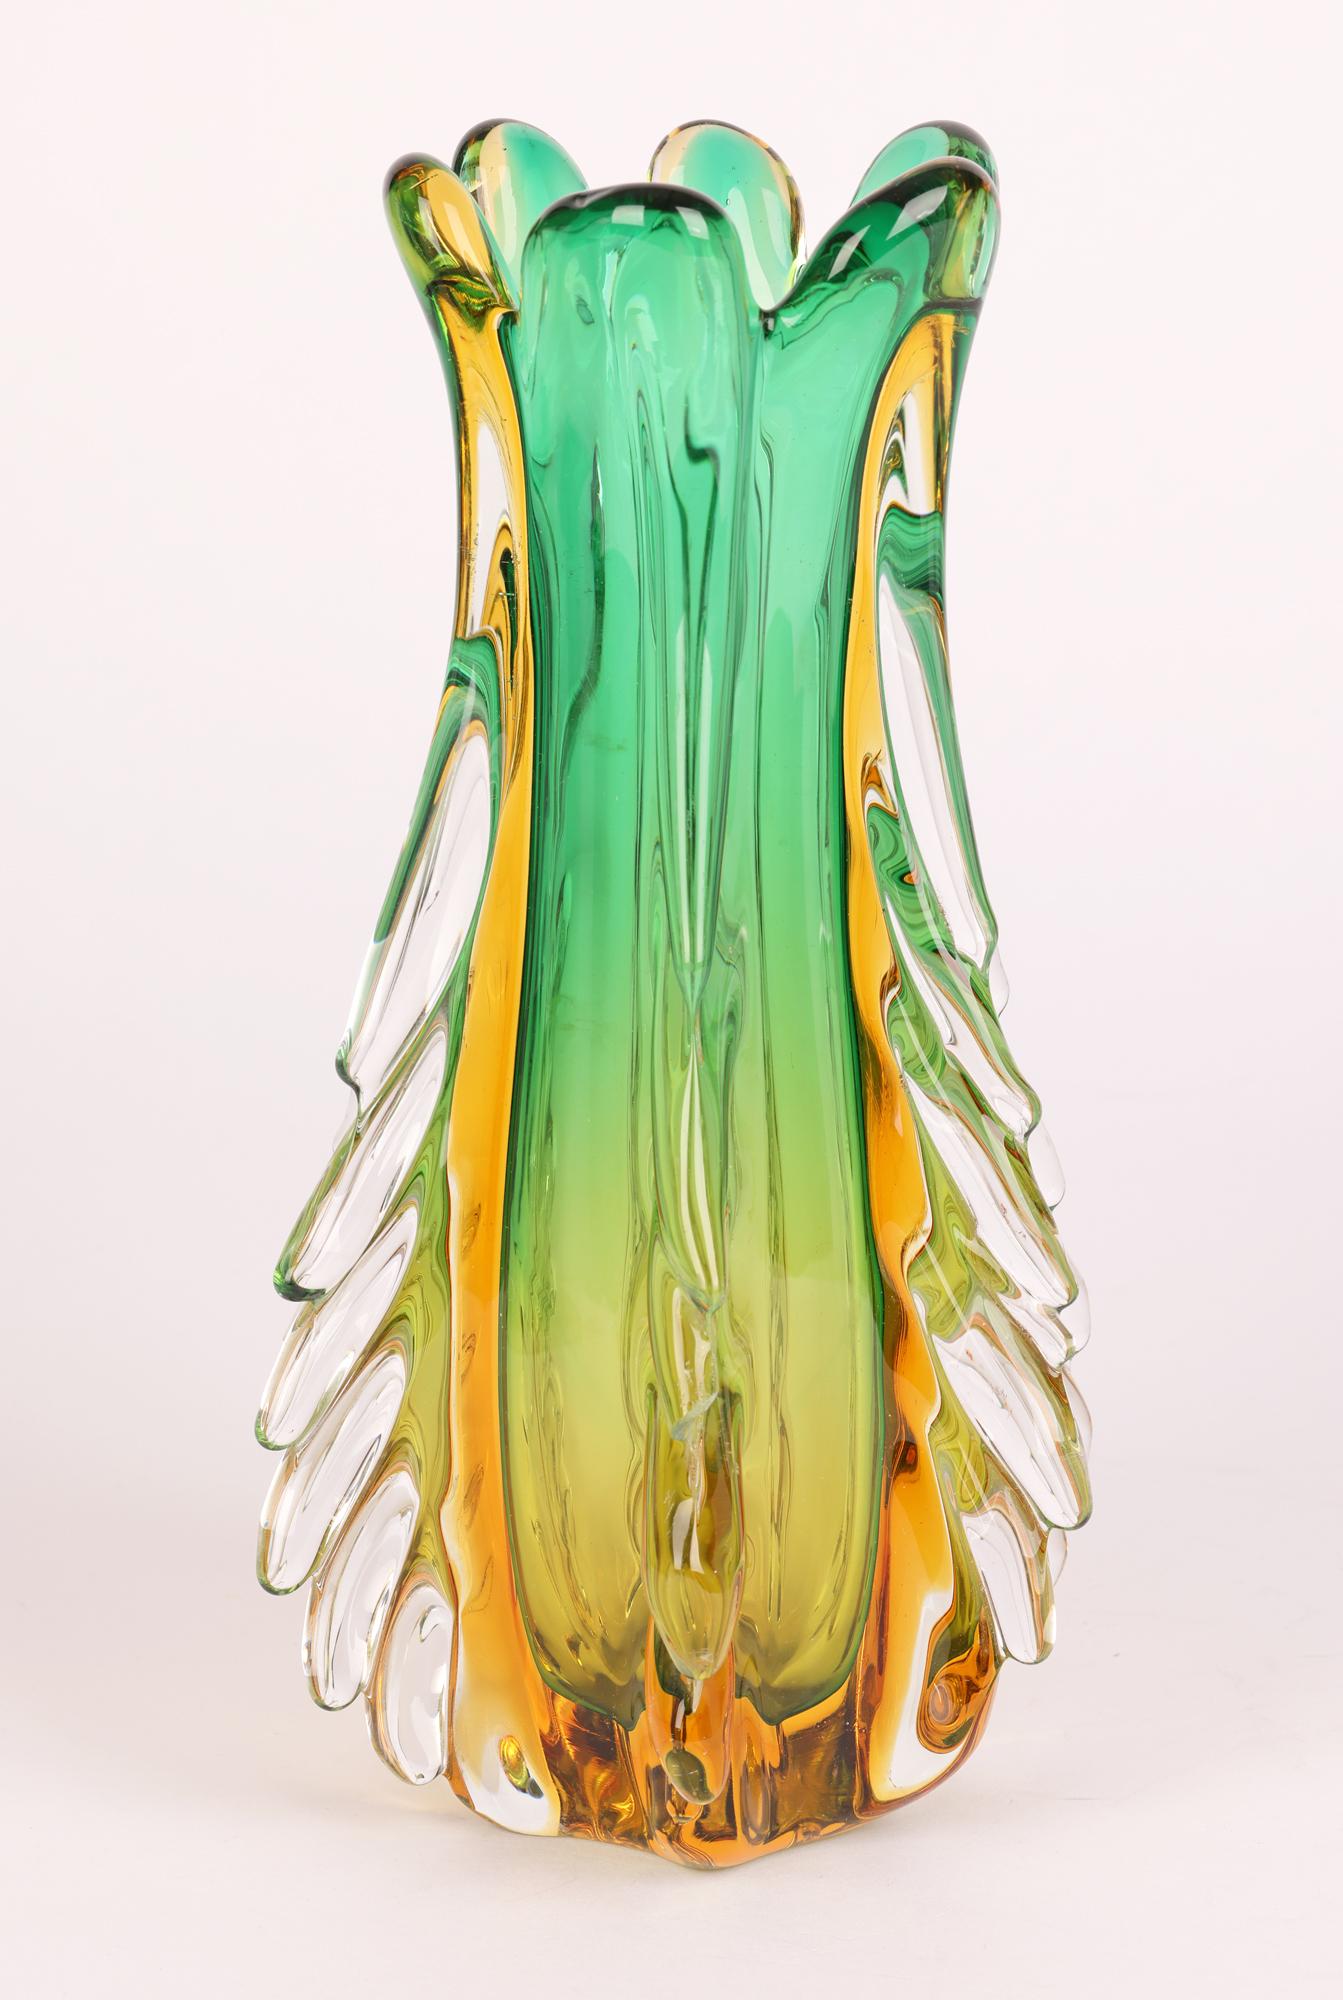 20th Century Italian Murano Sommerso Glass Vase by Flavio Poli for Seguso Vetri D’Arte